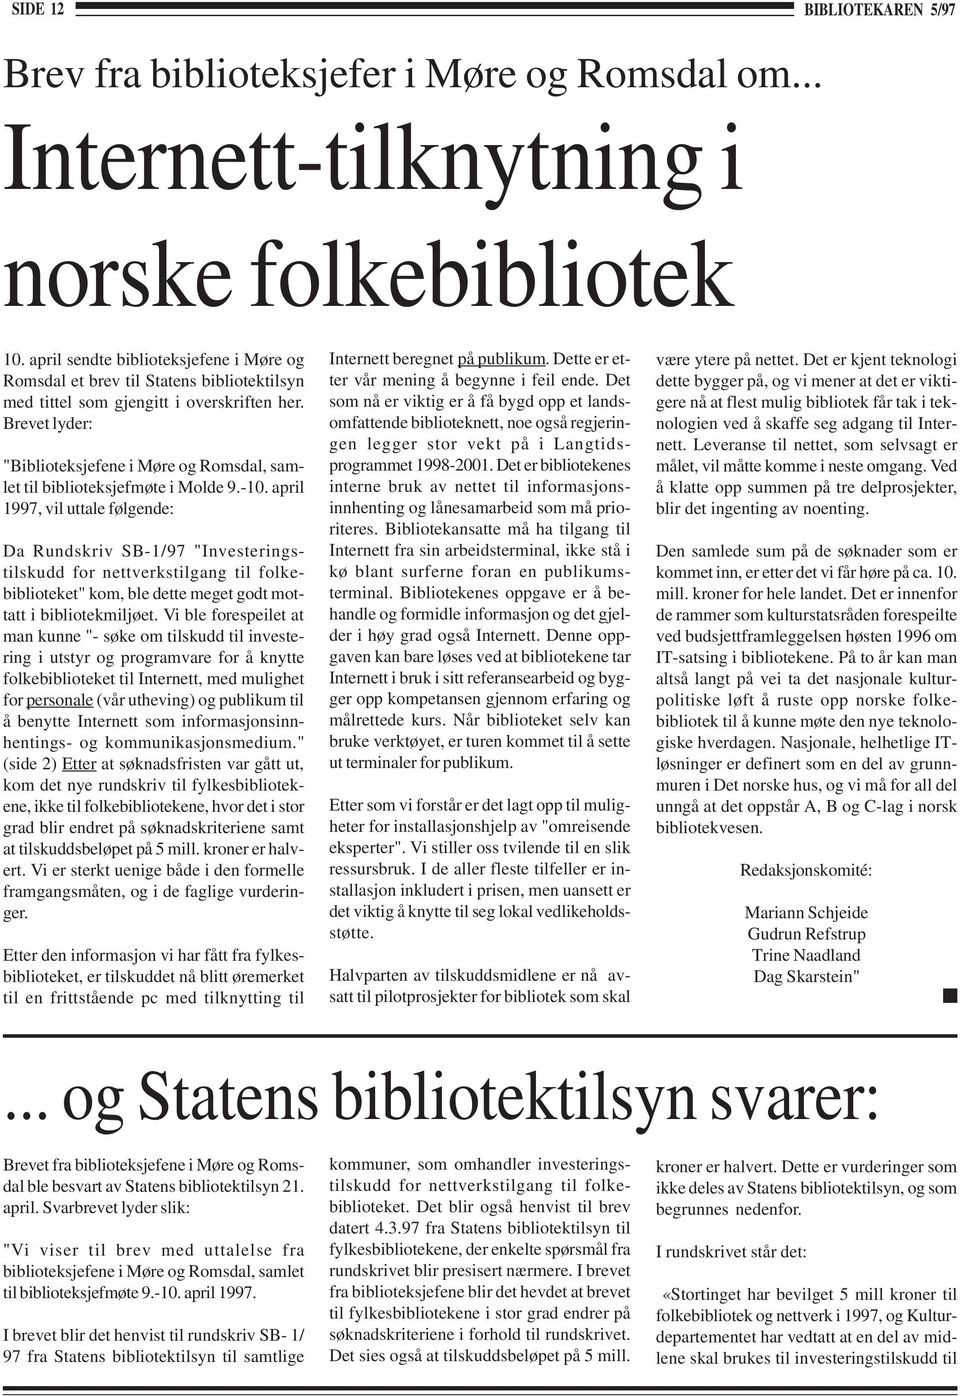 Brevet lyder: "Biblioteksjefene i Møre og Romsdal, samlet til biblioteksjefmøte i Molde 9.-10.